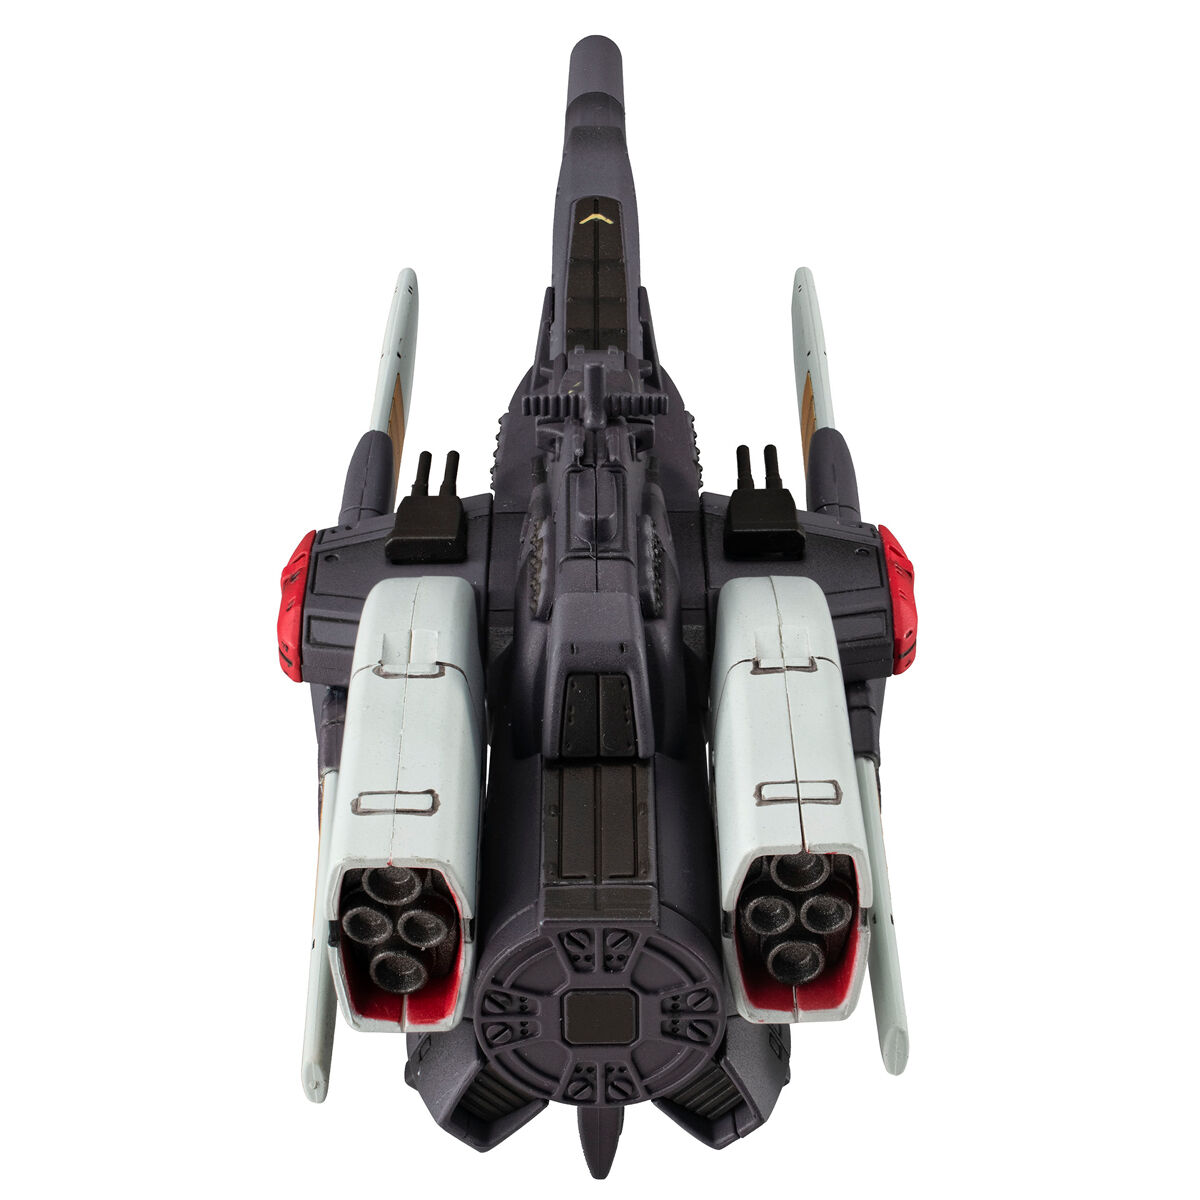 コスモフリートスペシャル『リーンホースJr.Re.』機動戦士Vガンダム 完成品モデル-006